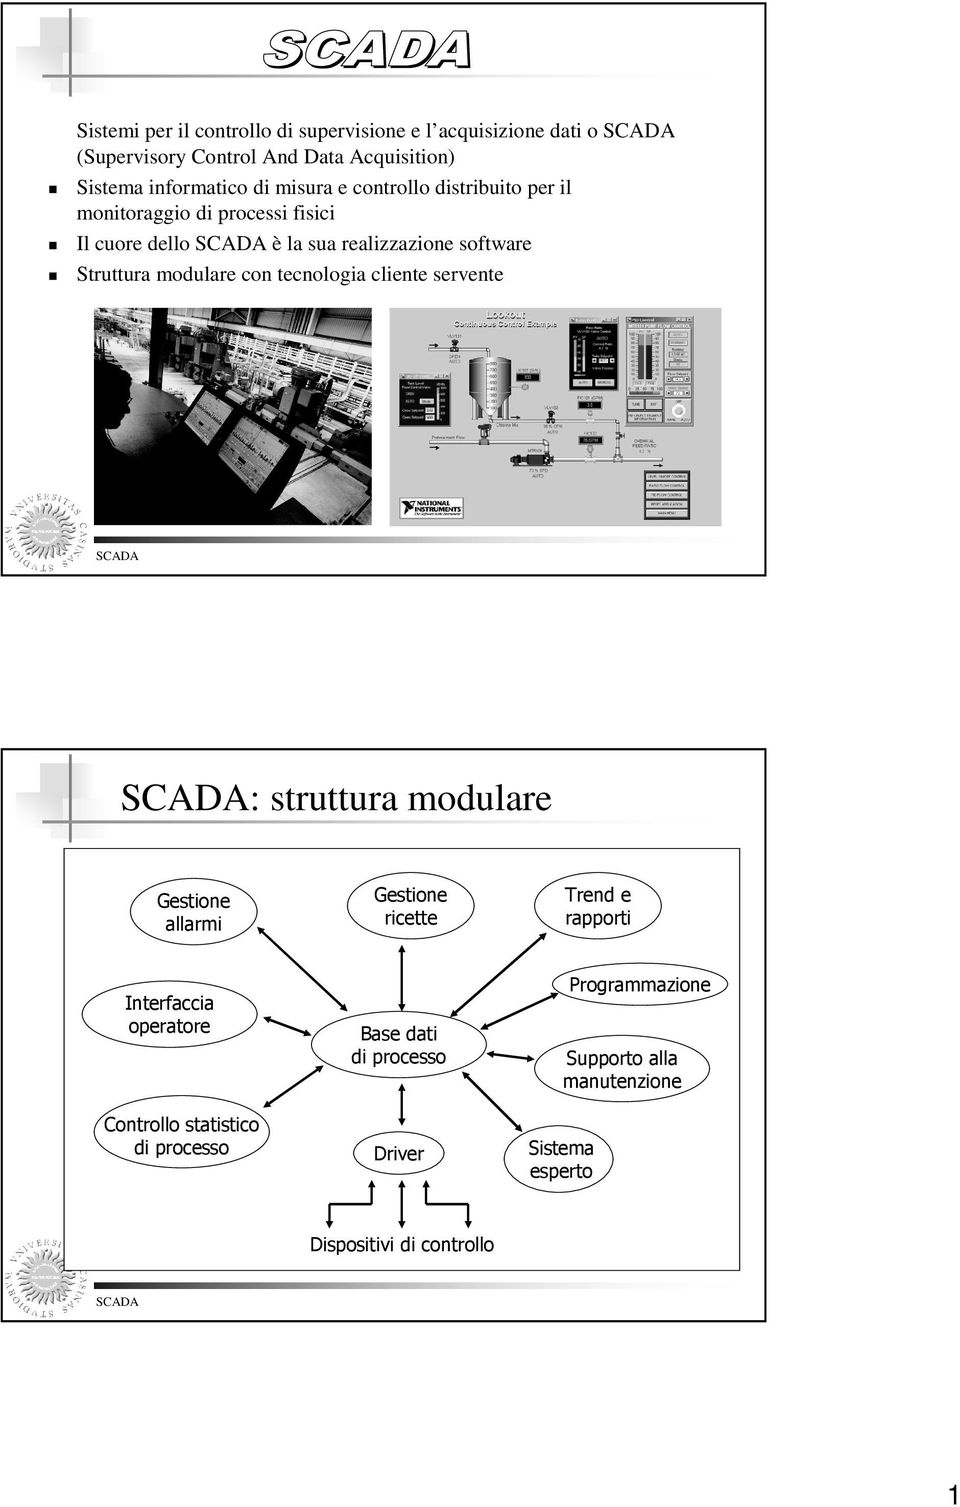 modulare con tecnologia cliente servente : struttura modulare Gestione allarmi Interfaccia operatore Controllo statistico di processo